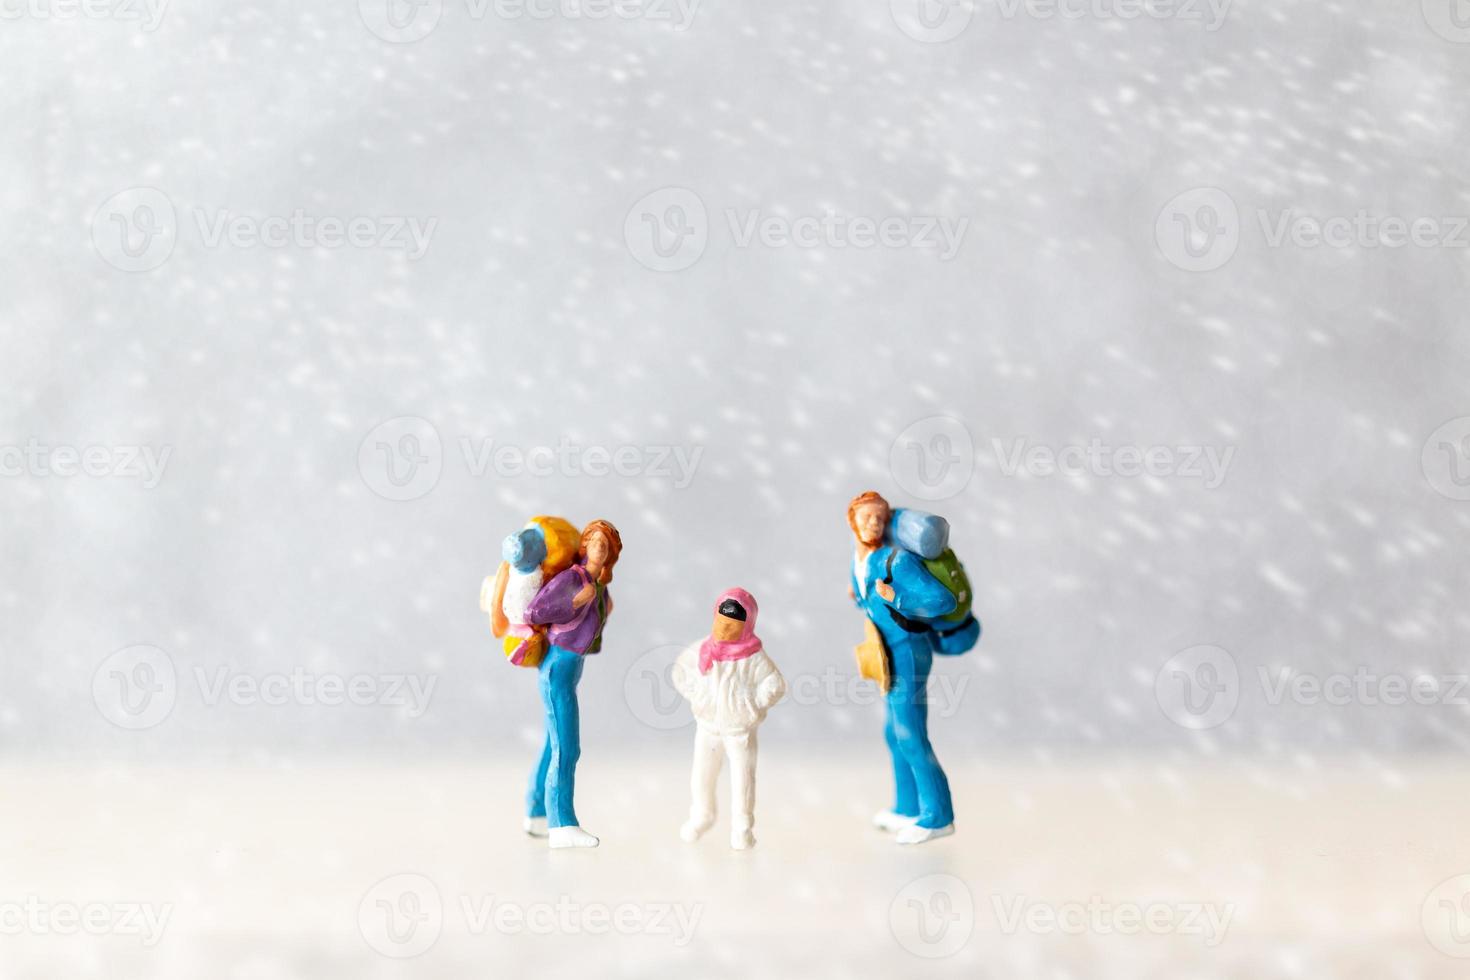 miniatuur mensen gelukkig familie reizen in winter tijd foto